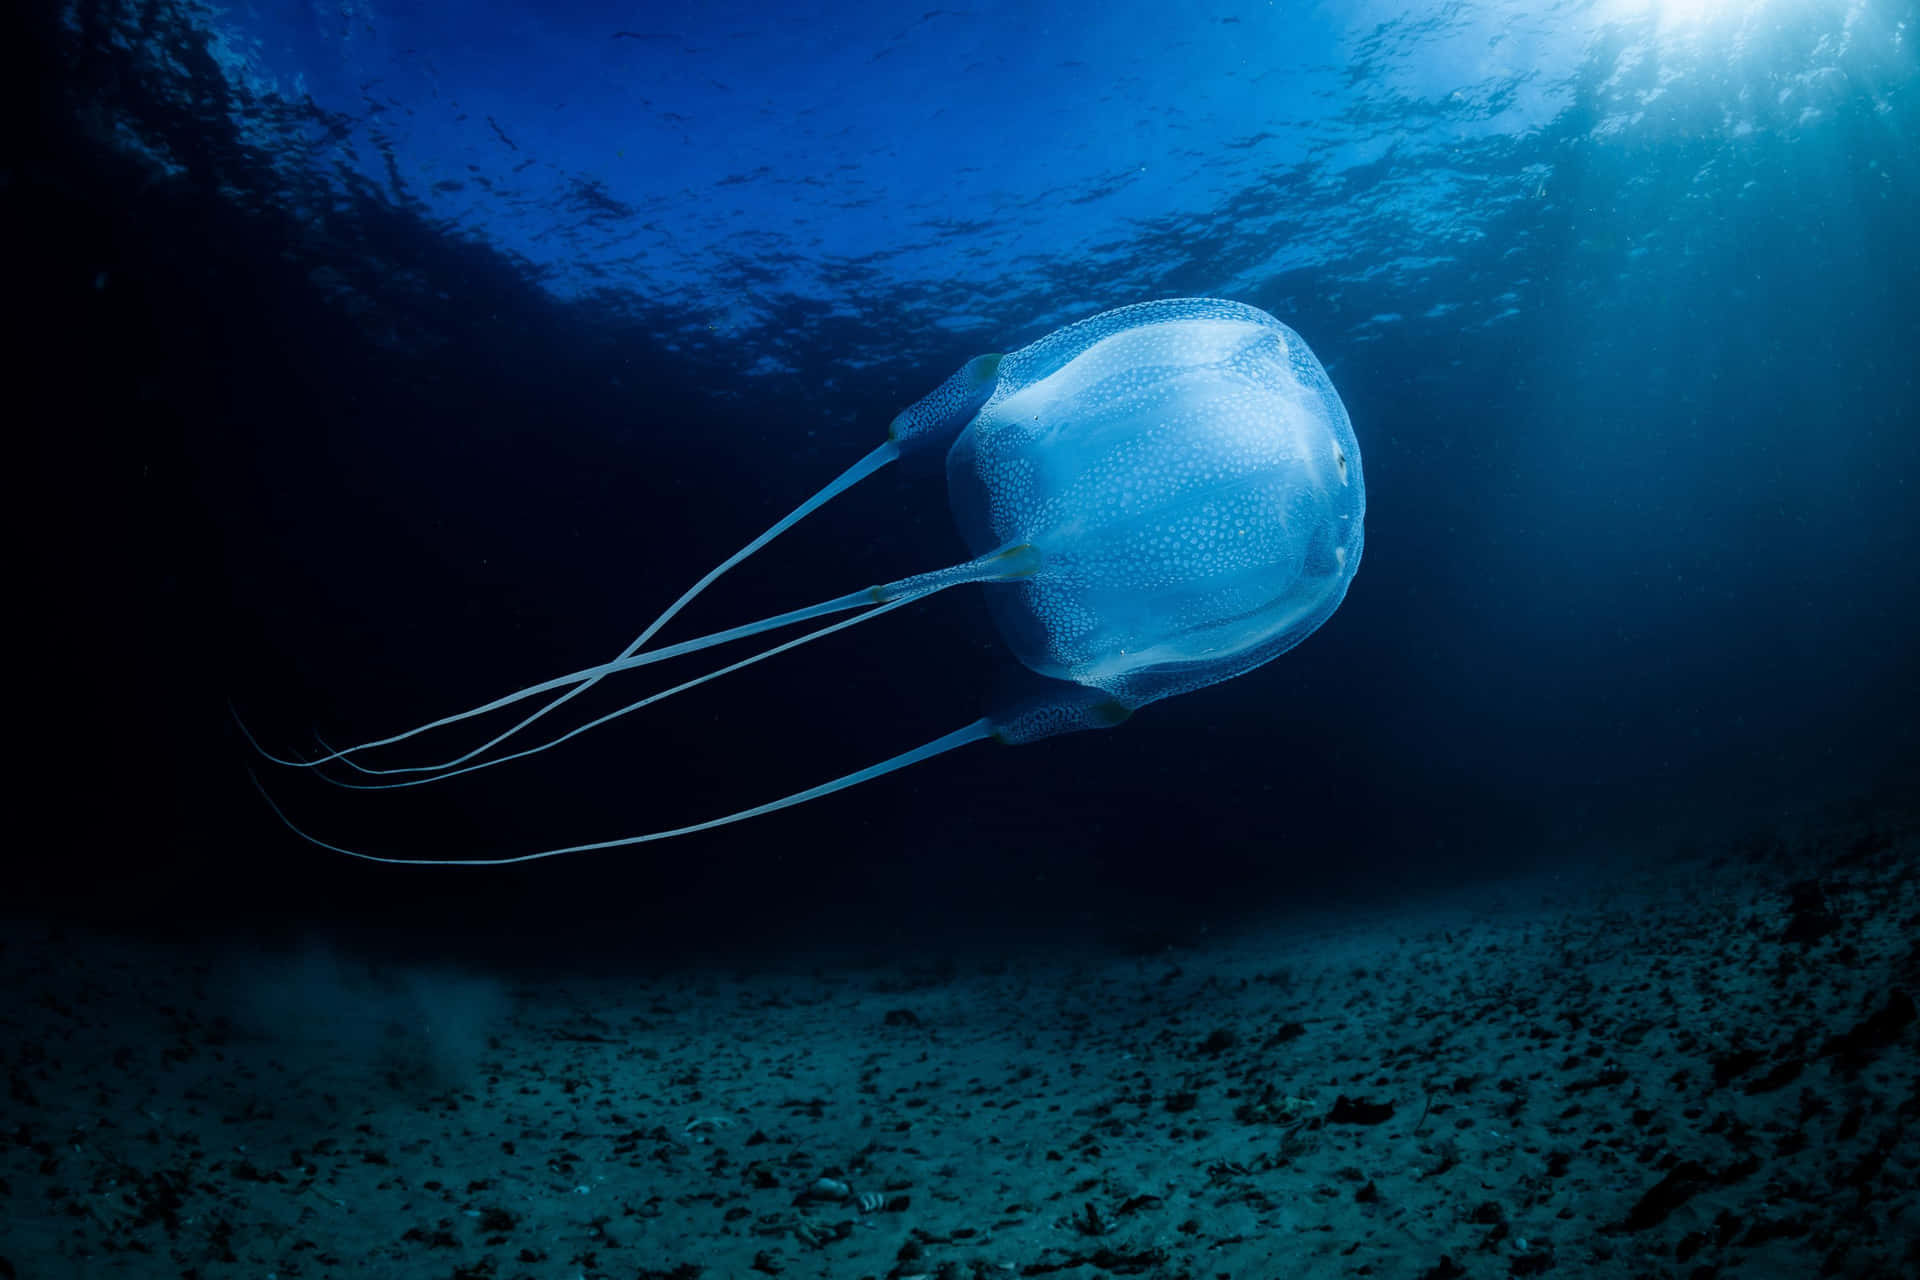 Box Jellyfish Underwater Scene Wallpaper